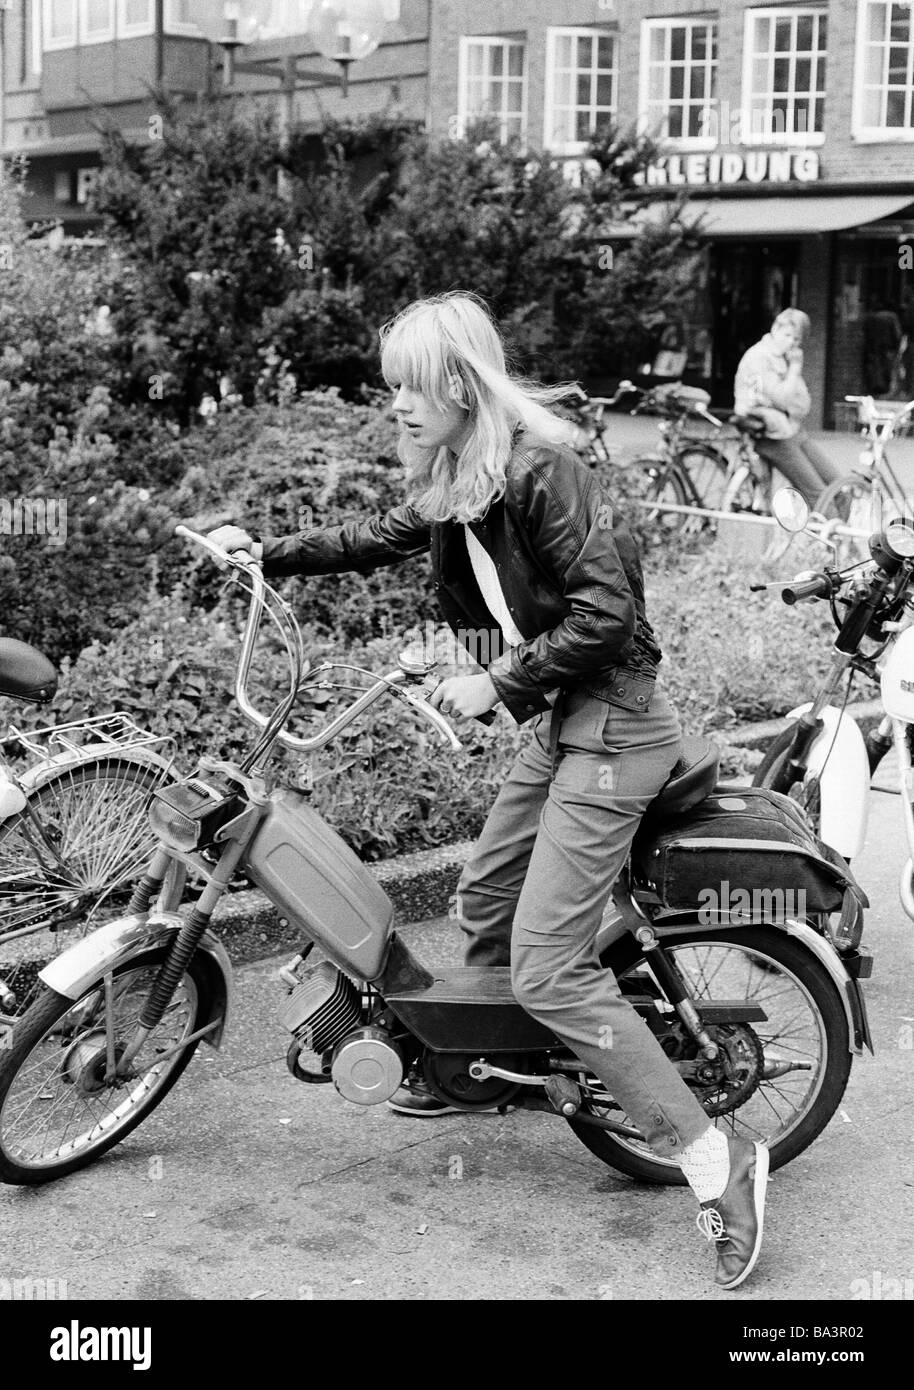 80, fotografía en blanco y negro, gente joven que estaba sentada en un pequeño ciclomotor, un joven en el fondo la cuida, chaqueta de cuero, pantalones, entre 14 y 17 años de edad Foto de stock